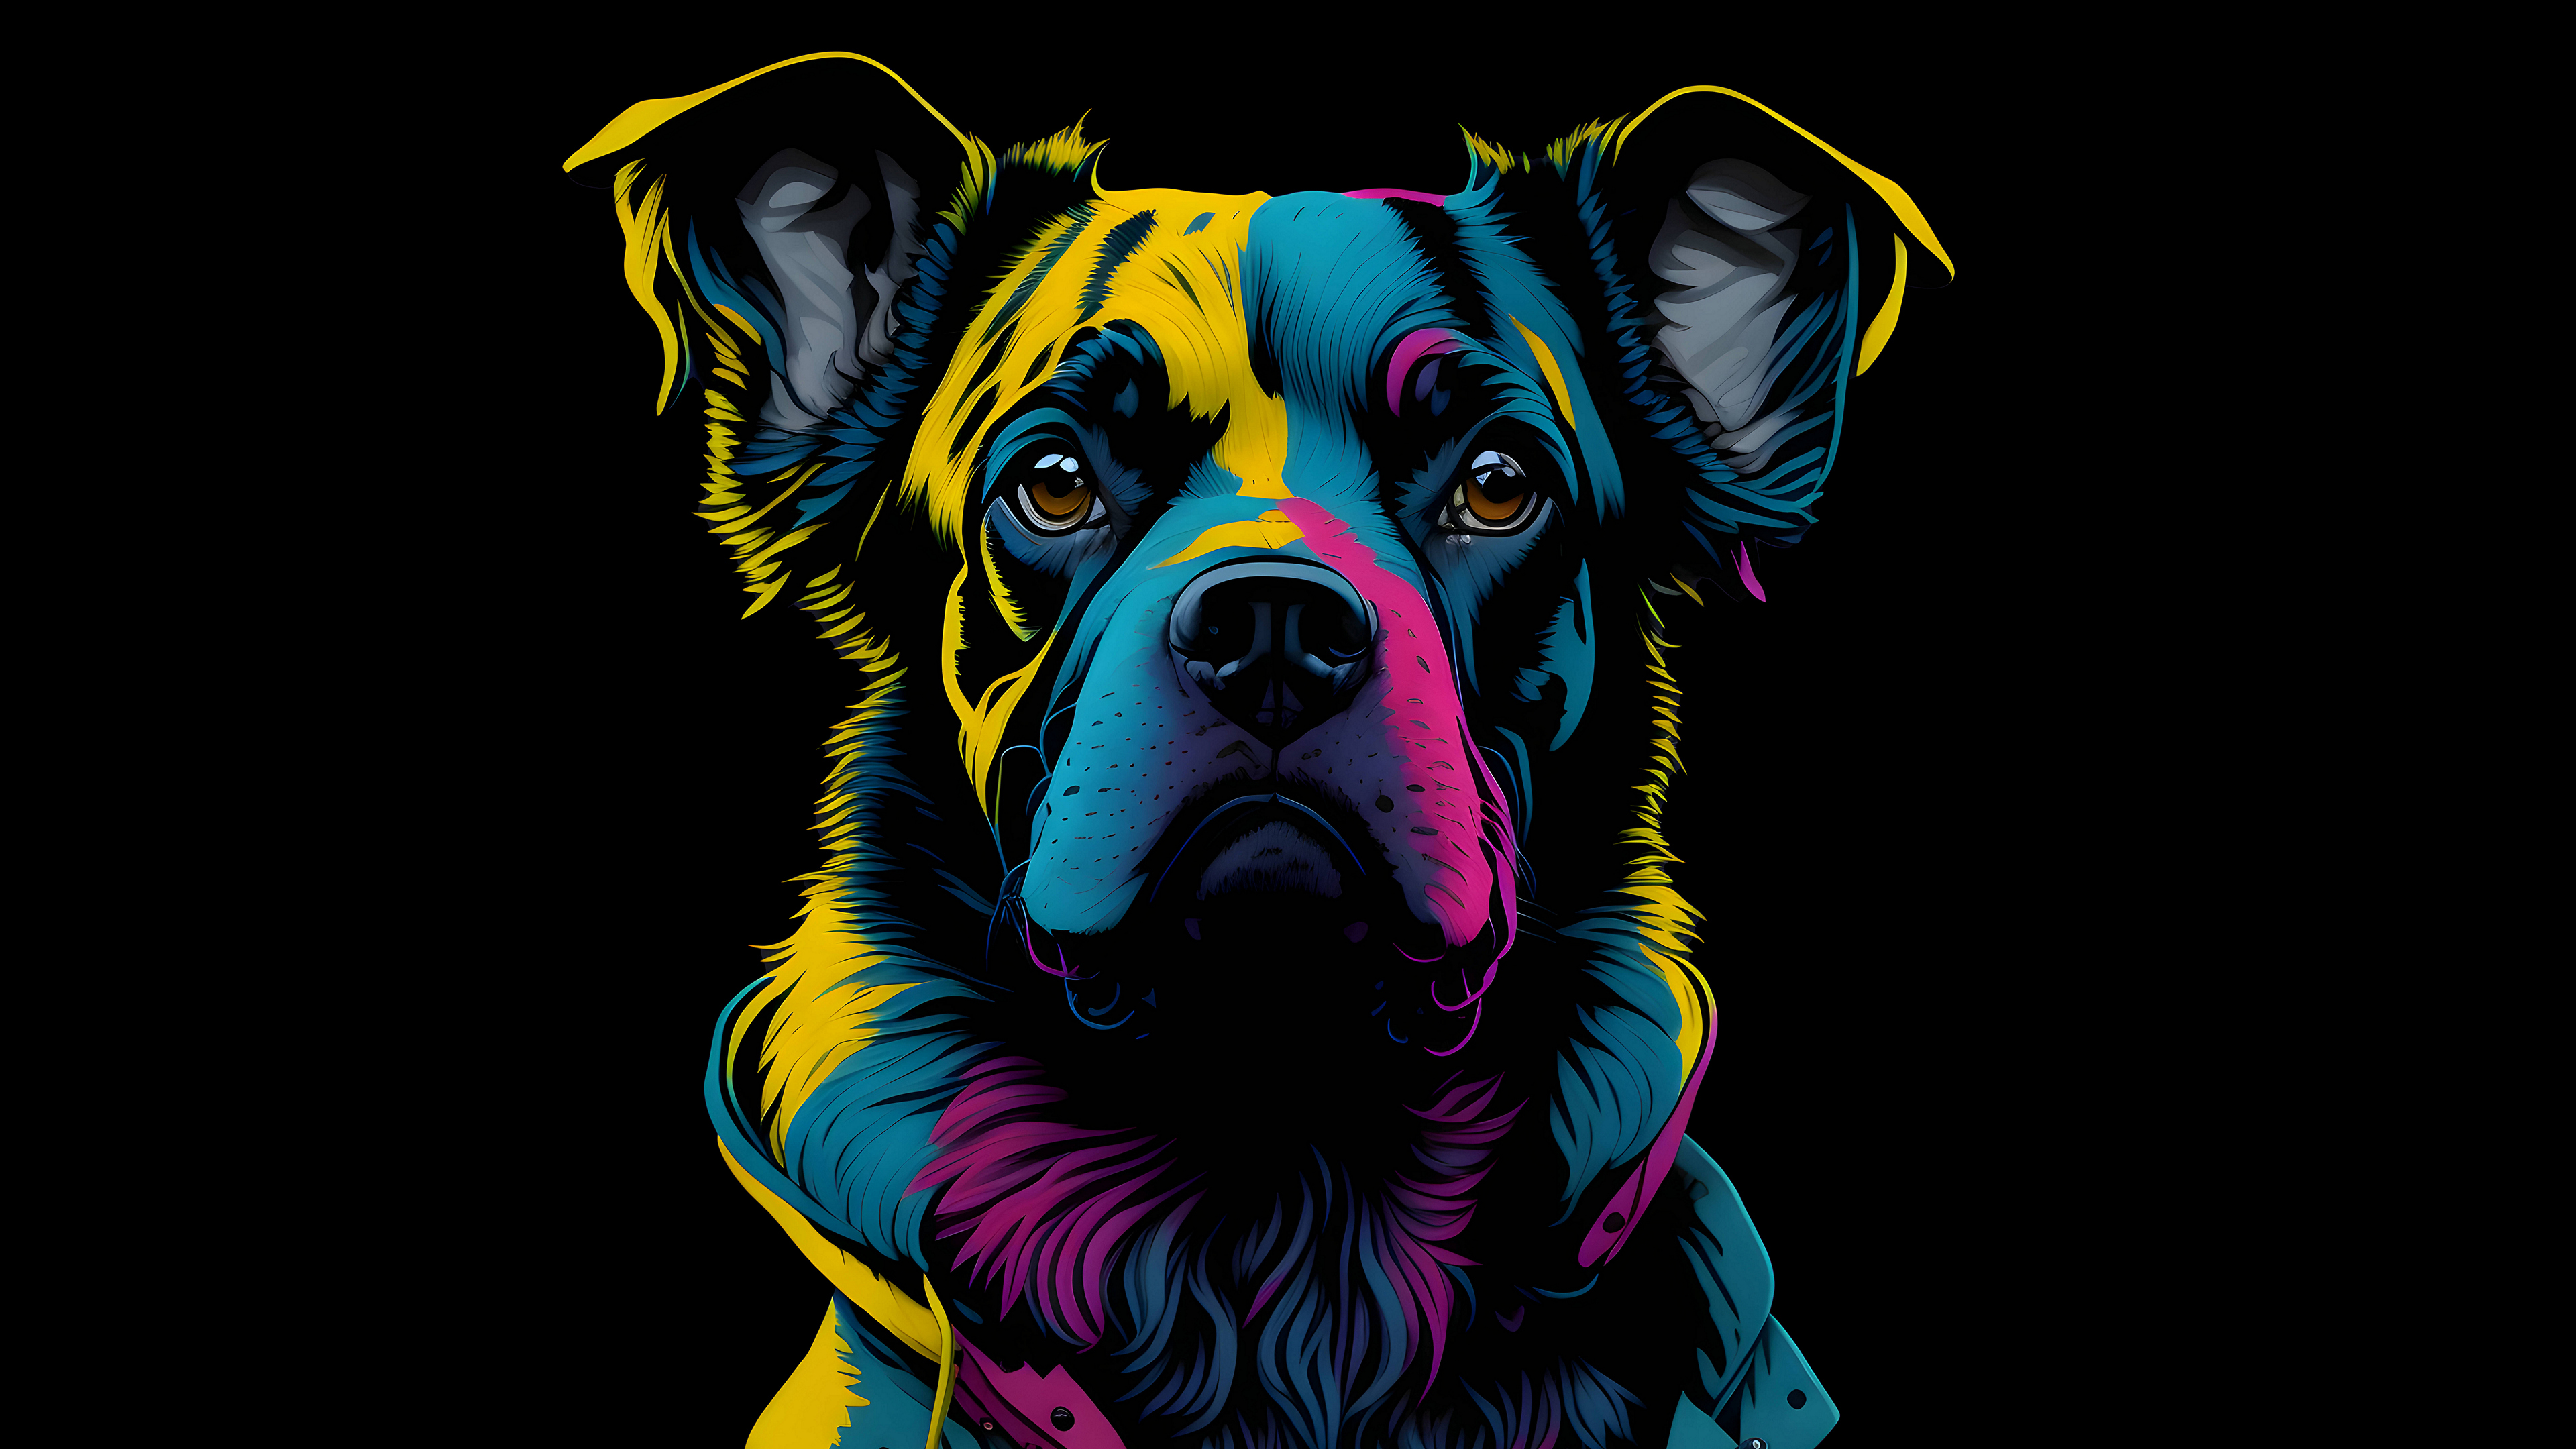 这只狗是用多种颜色的颜料画在黑色背景上的